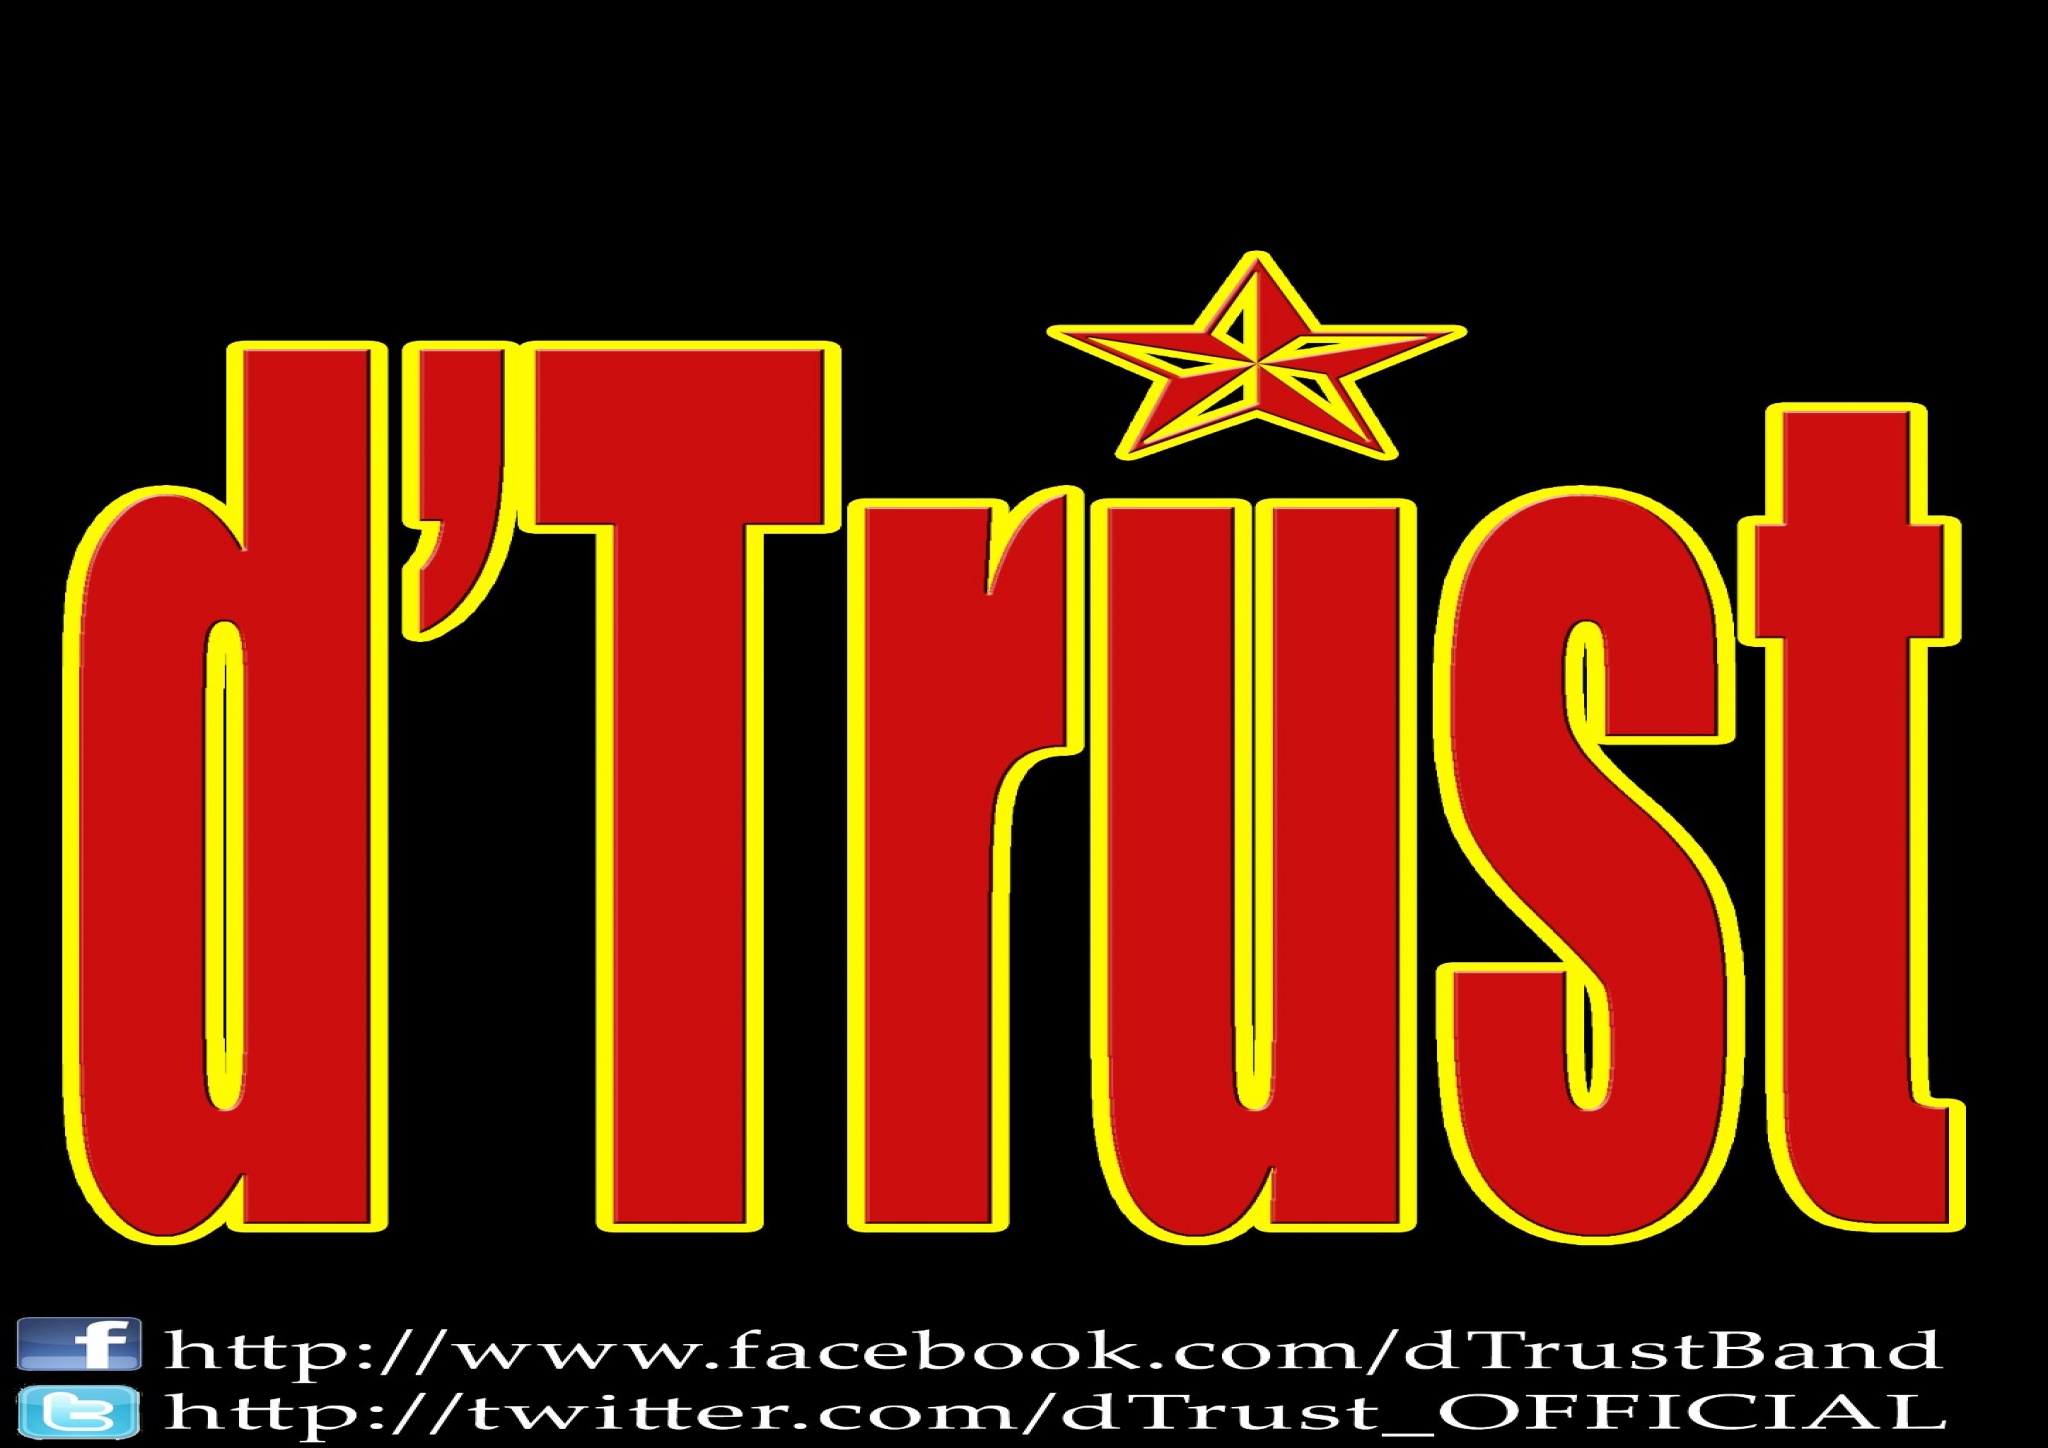 d'Trust